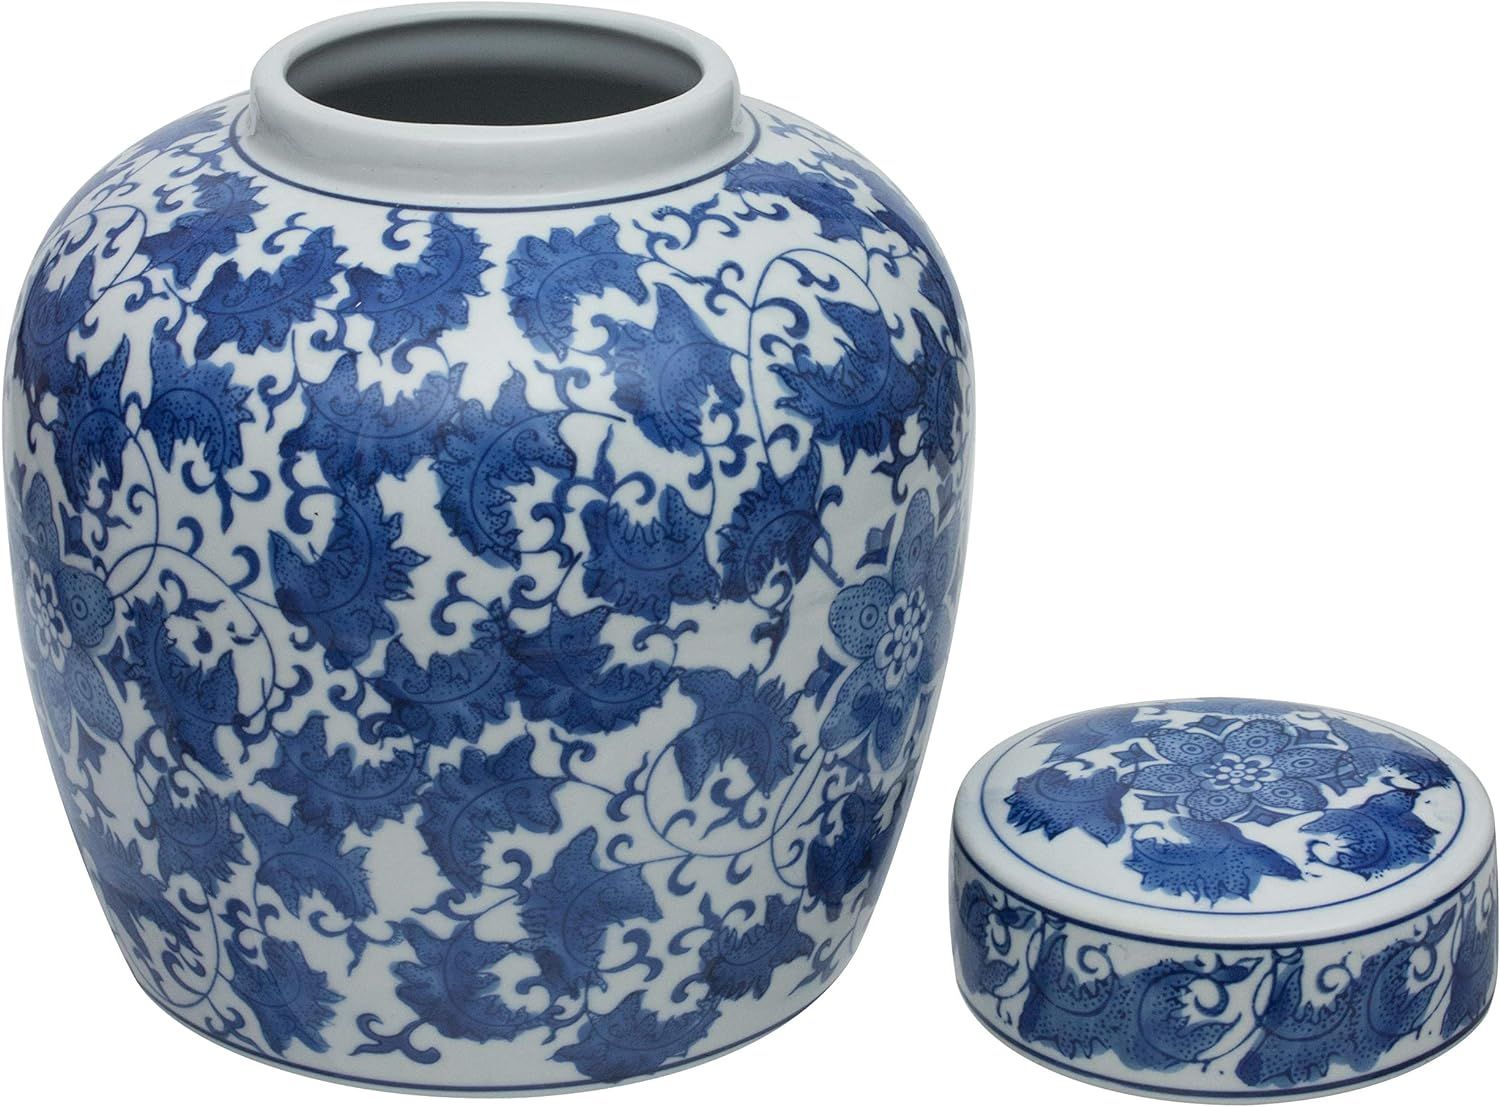 ORIENTAL Furniture 10" Floral Blue & White Porcelain Ginger Jar | Amazon (US)